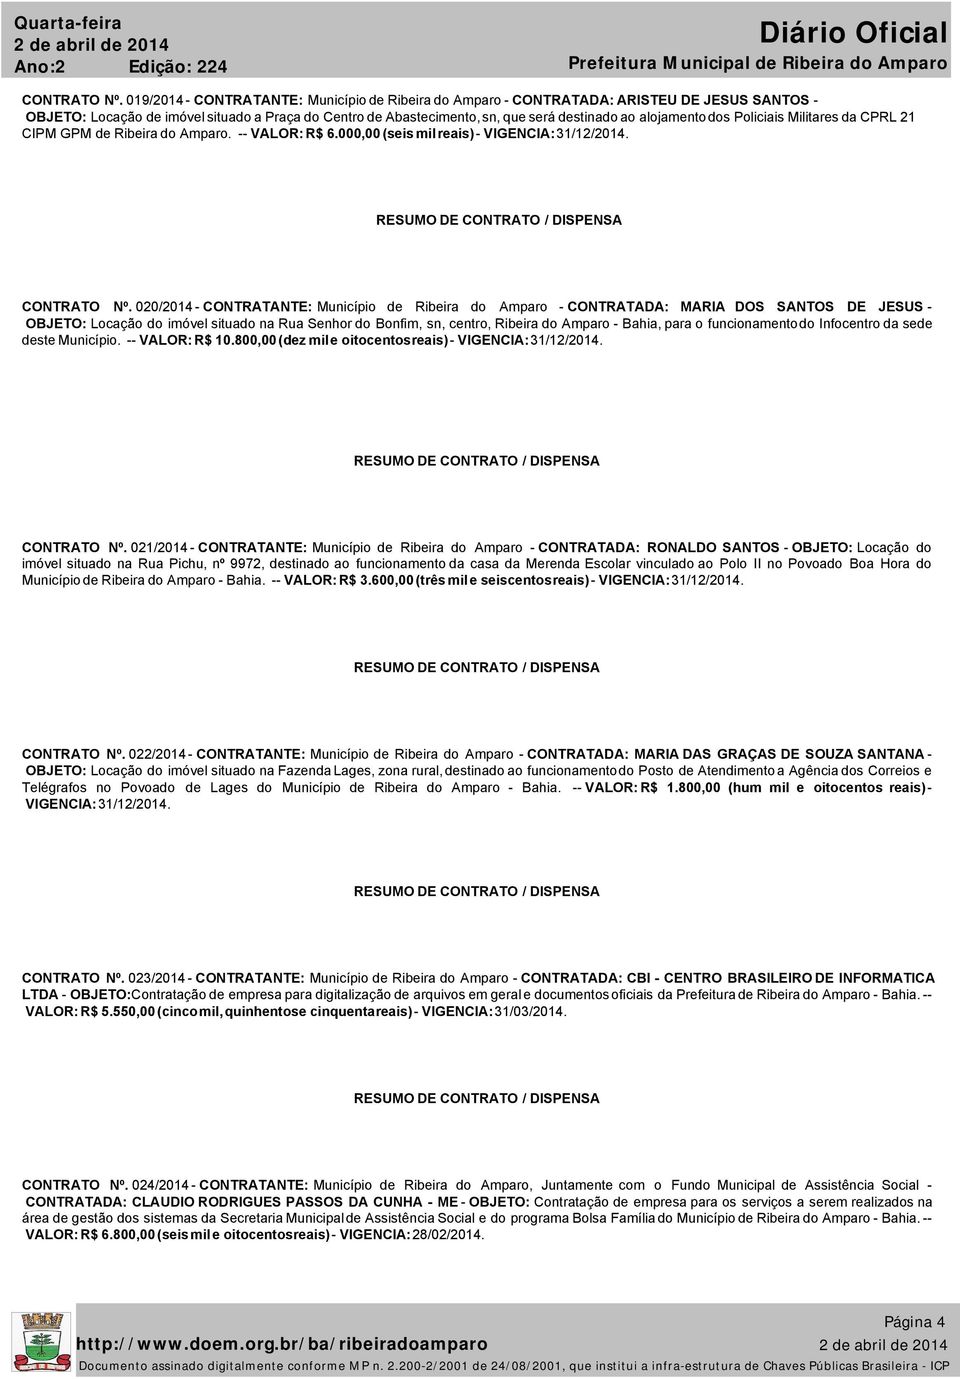 alojamento dos Policiais Militares da CPRL 21 CIPM GPM de Ribeira do Amparo. -- VALOR: R$ 6.000,00 (seis mil reais) - VIGENCIA: 31/12/2014. CONTRATO Nº.